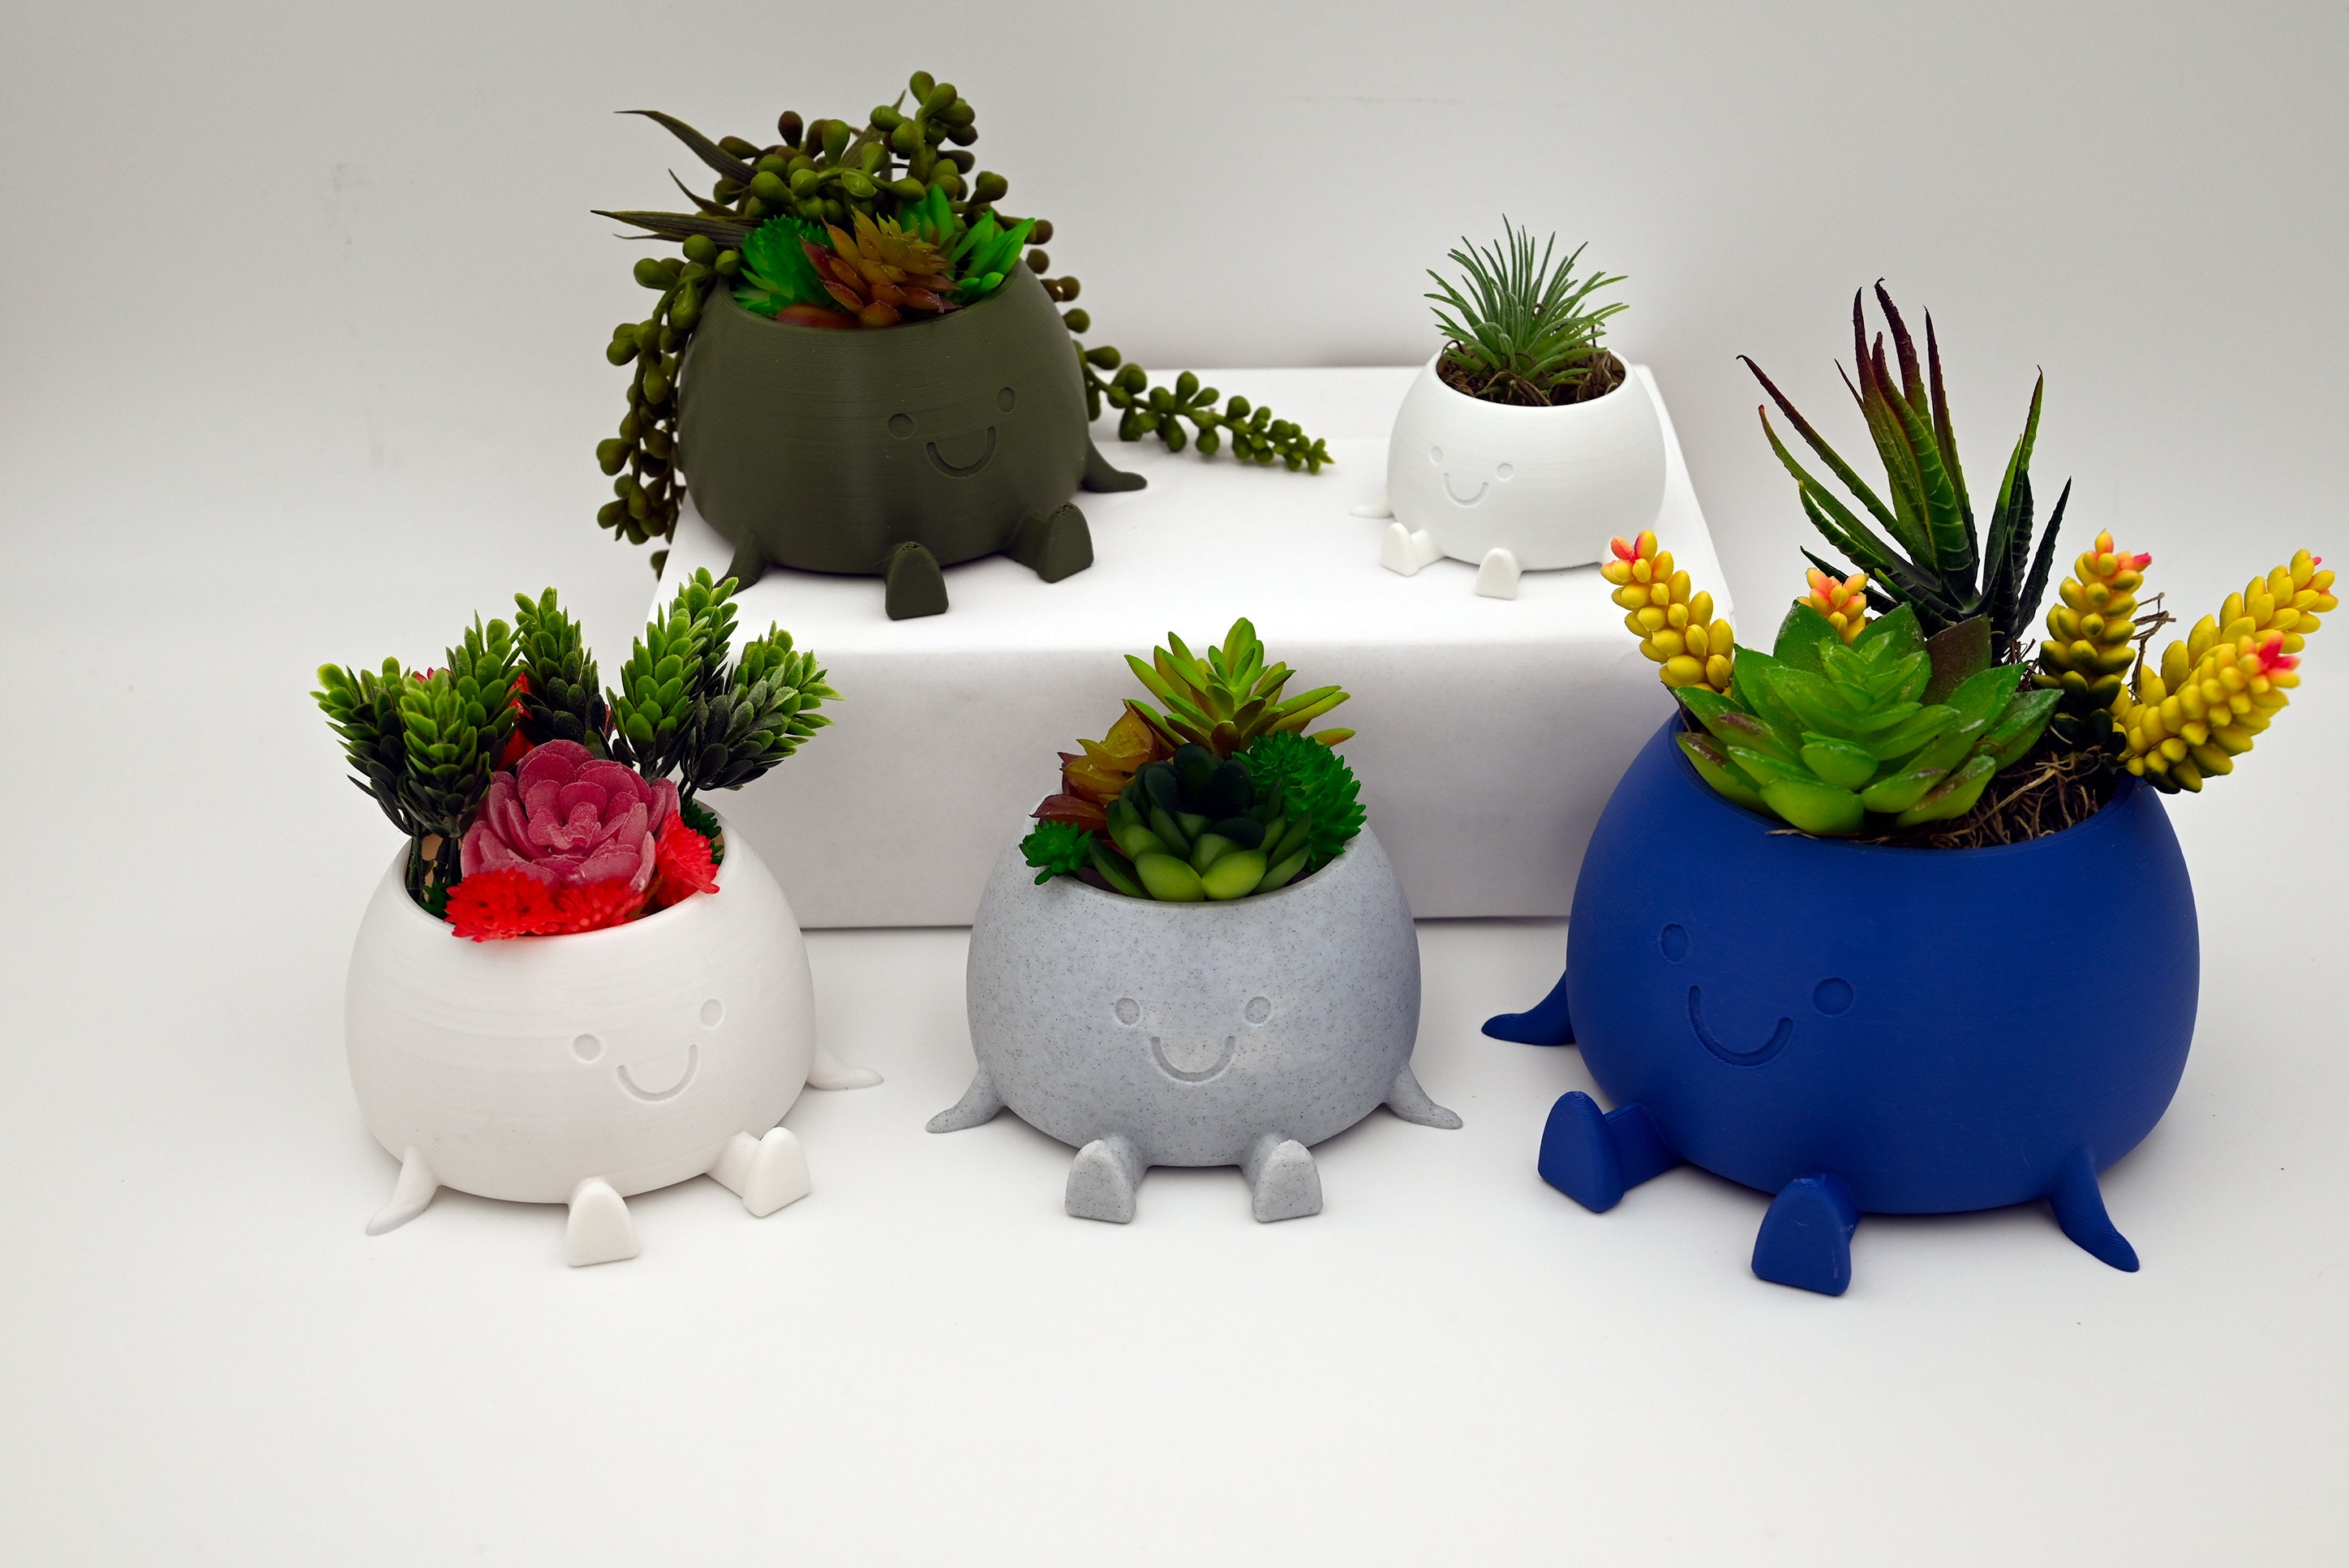 Mischievous Smiling Planter Pot // 3D Printed Smiling Planter Air